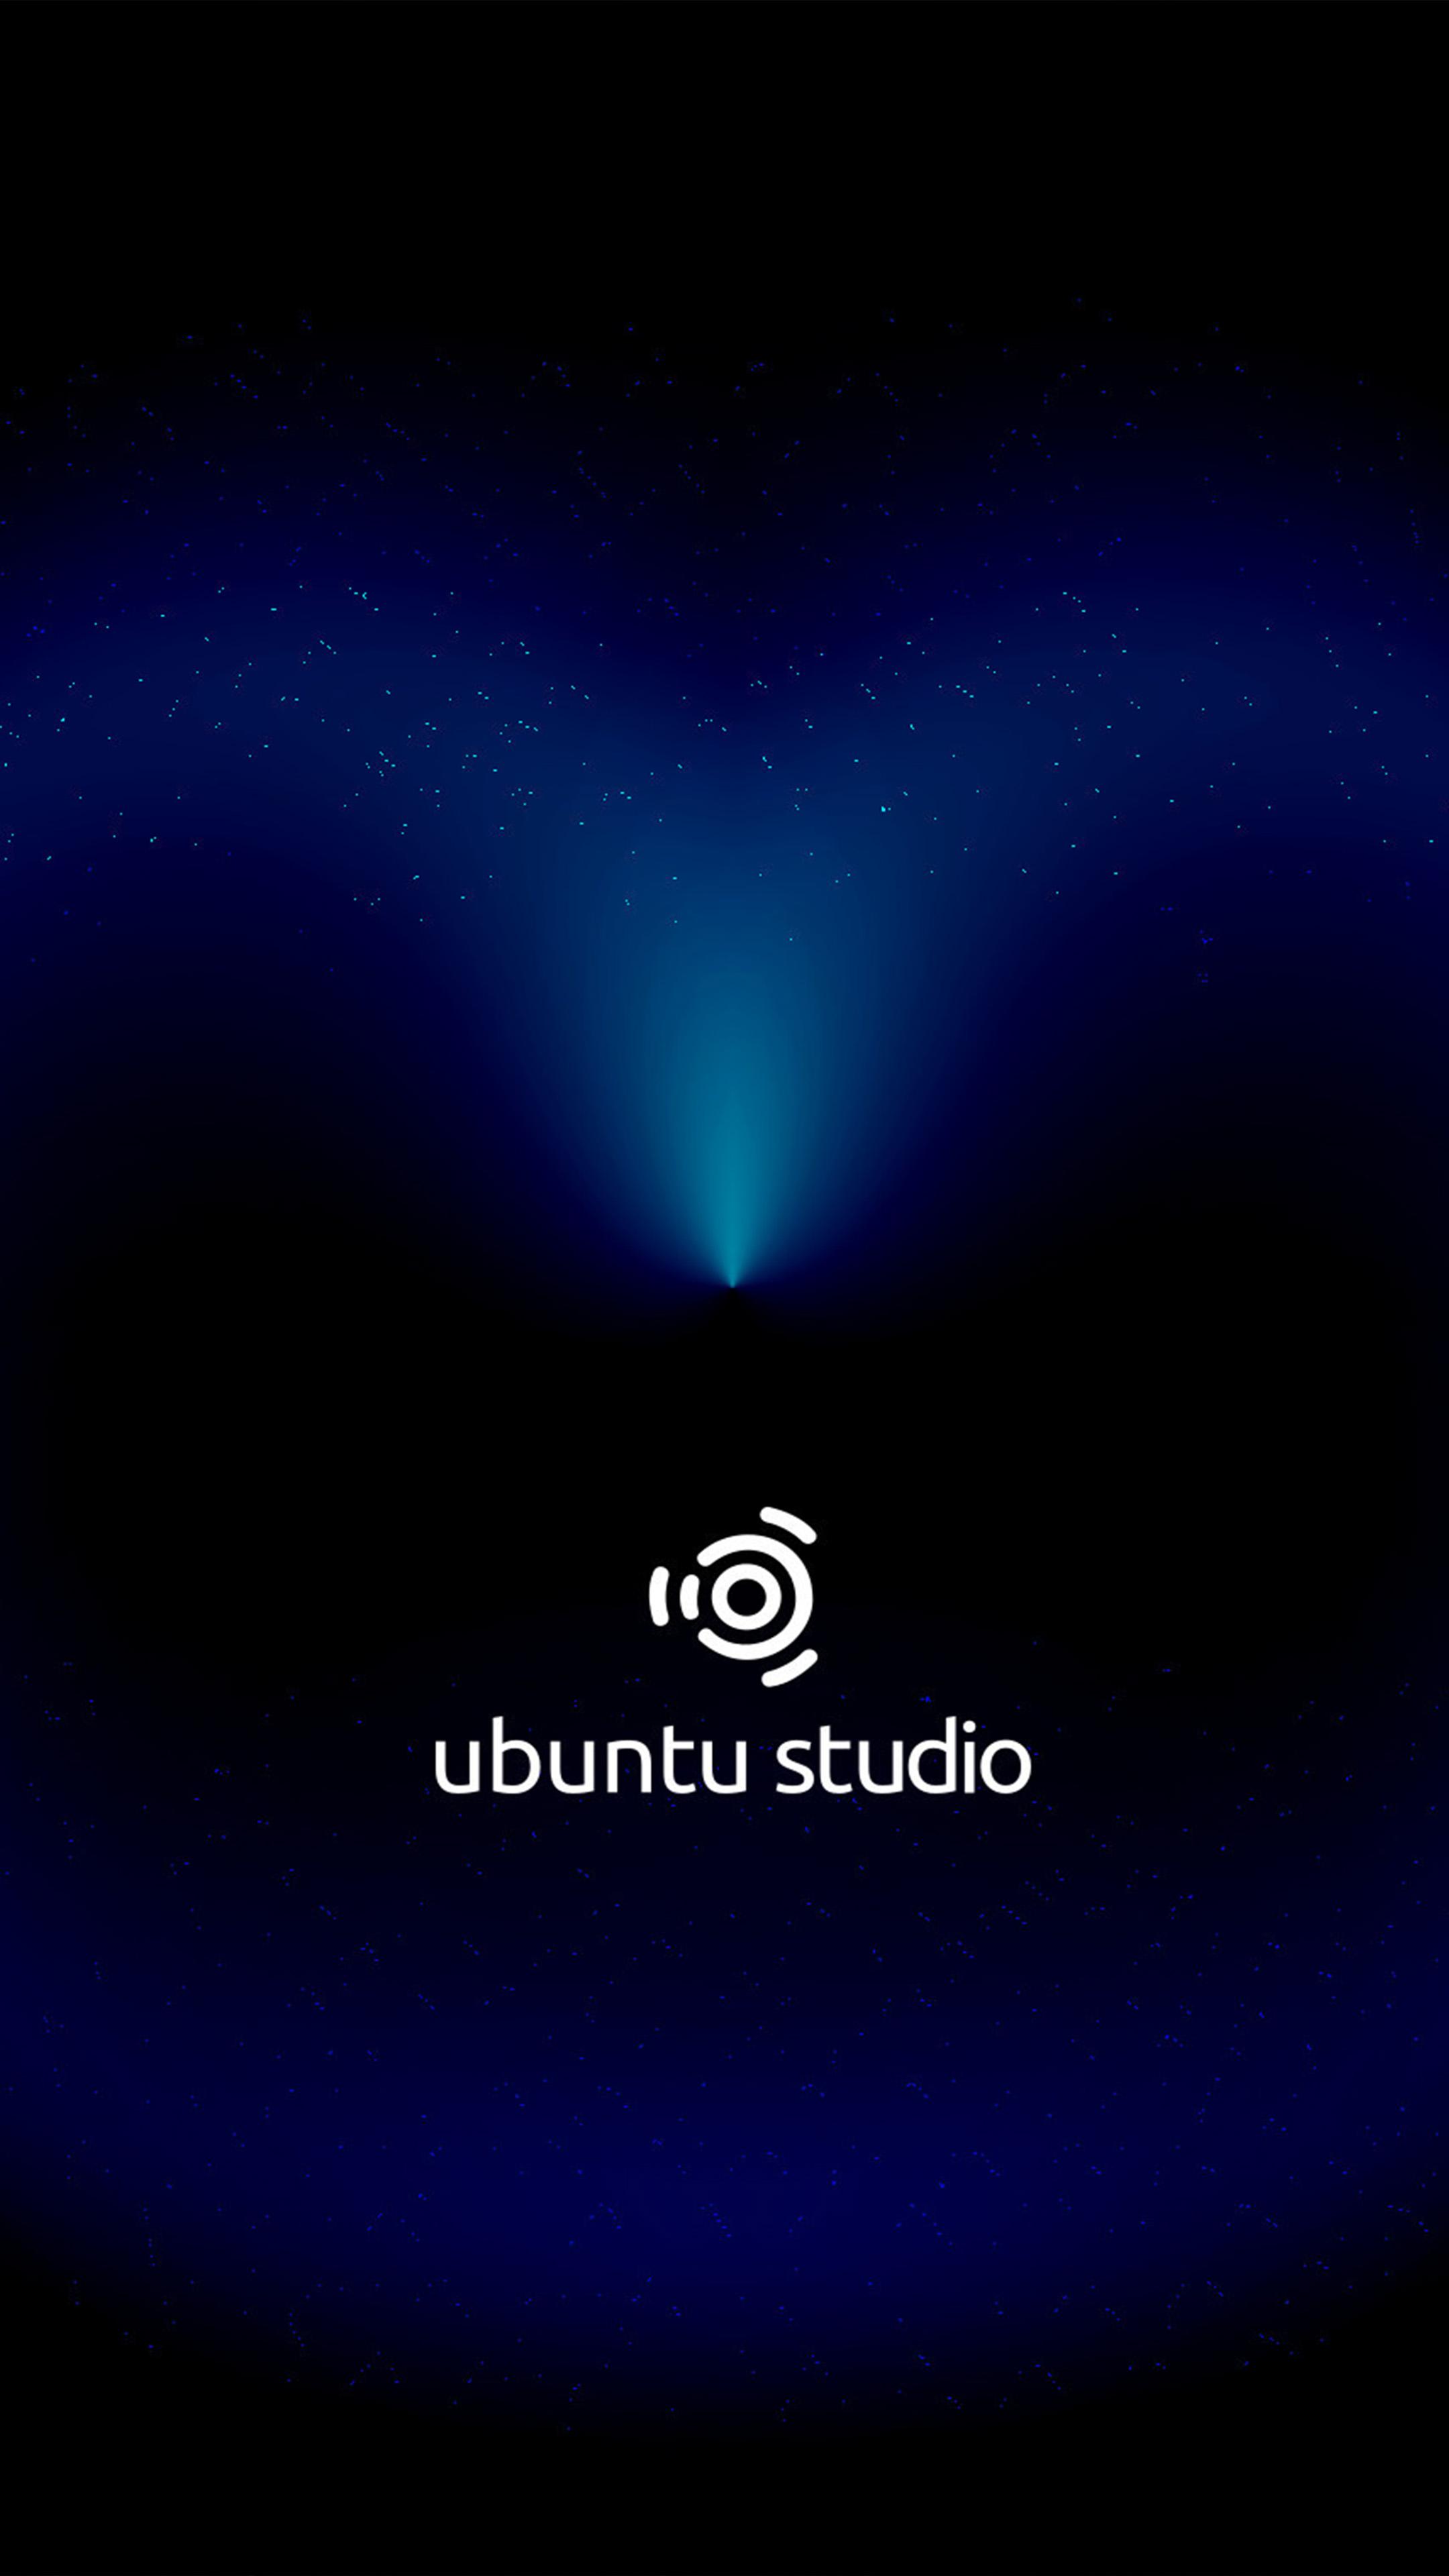 Download Ubuntu Studio Dark Cosmic Black Free Pure 4K Ultra